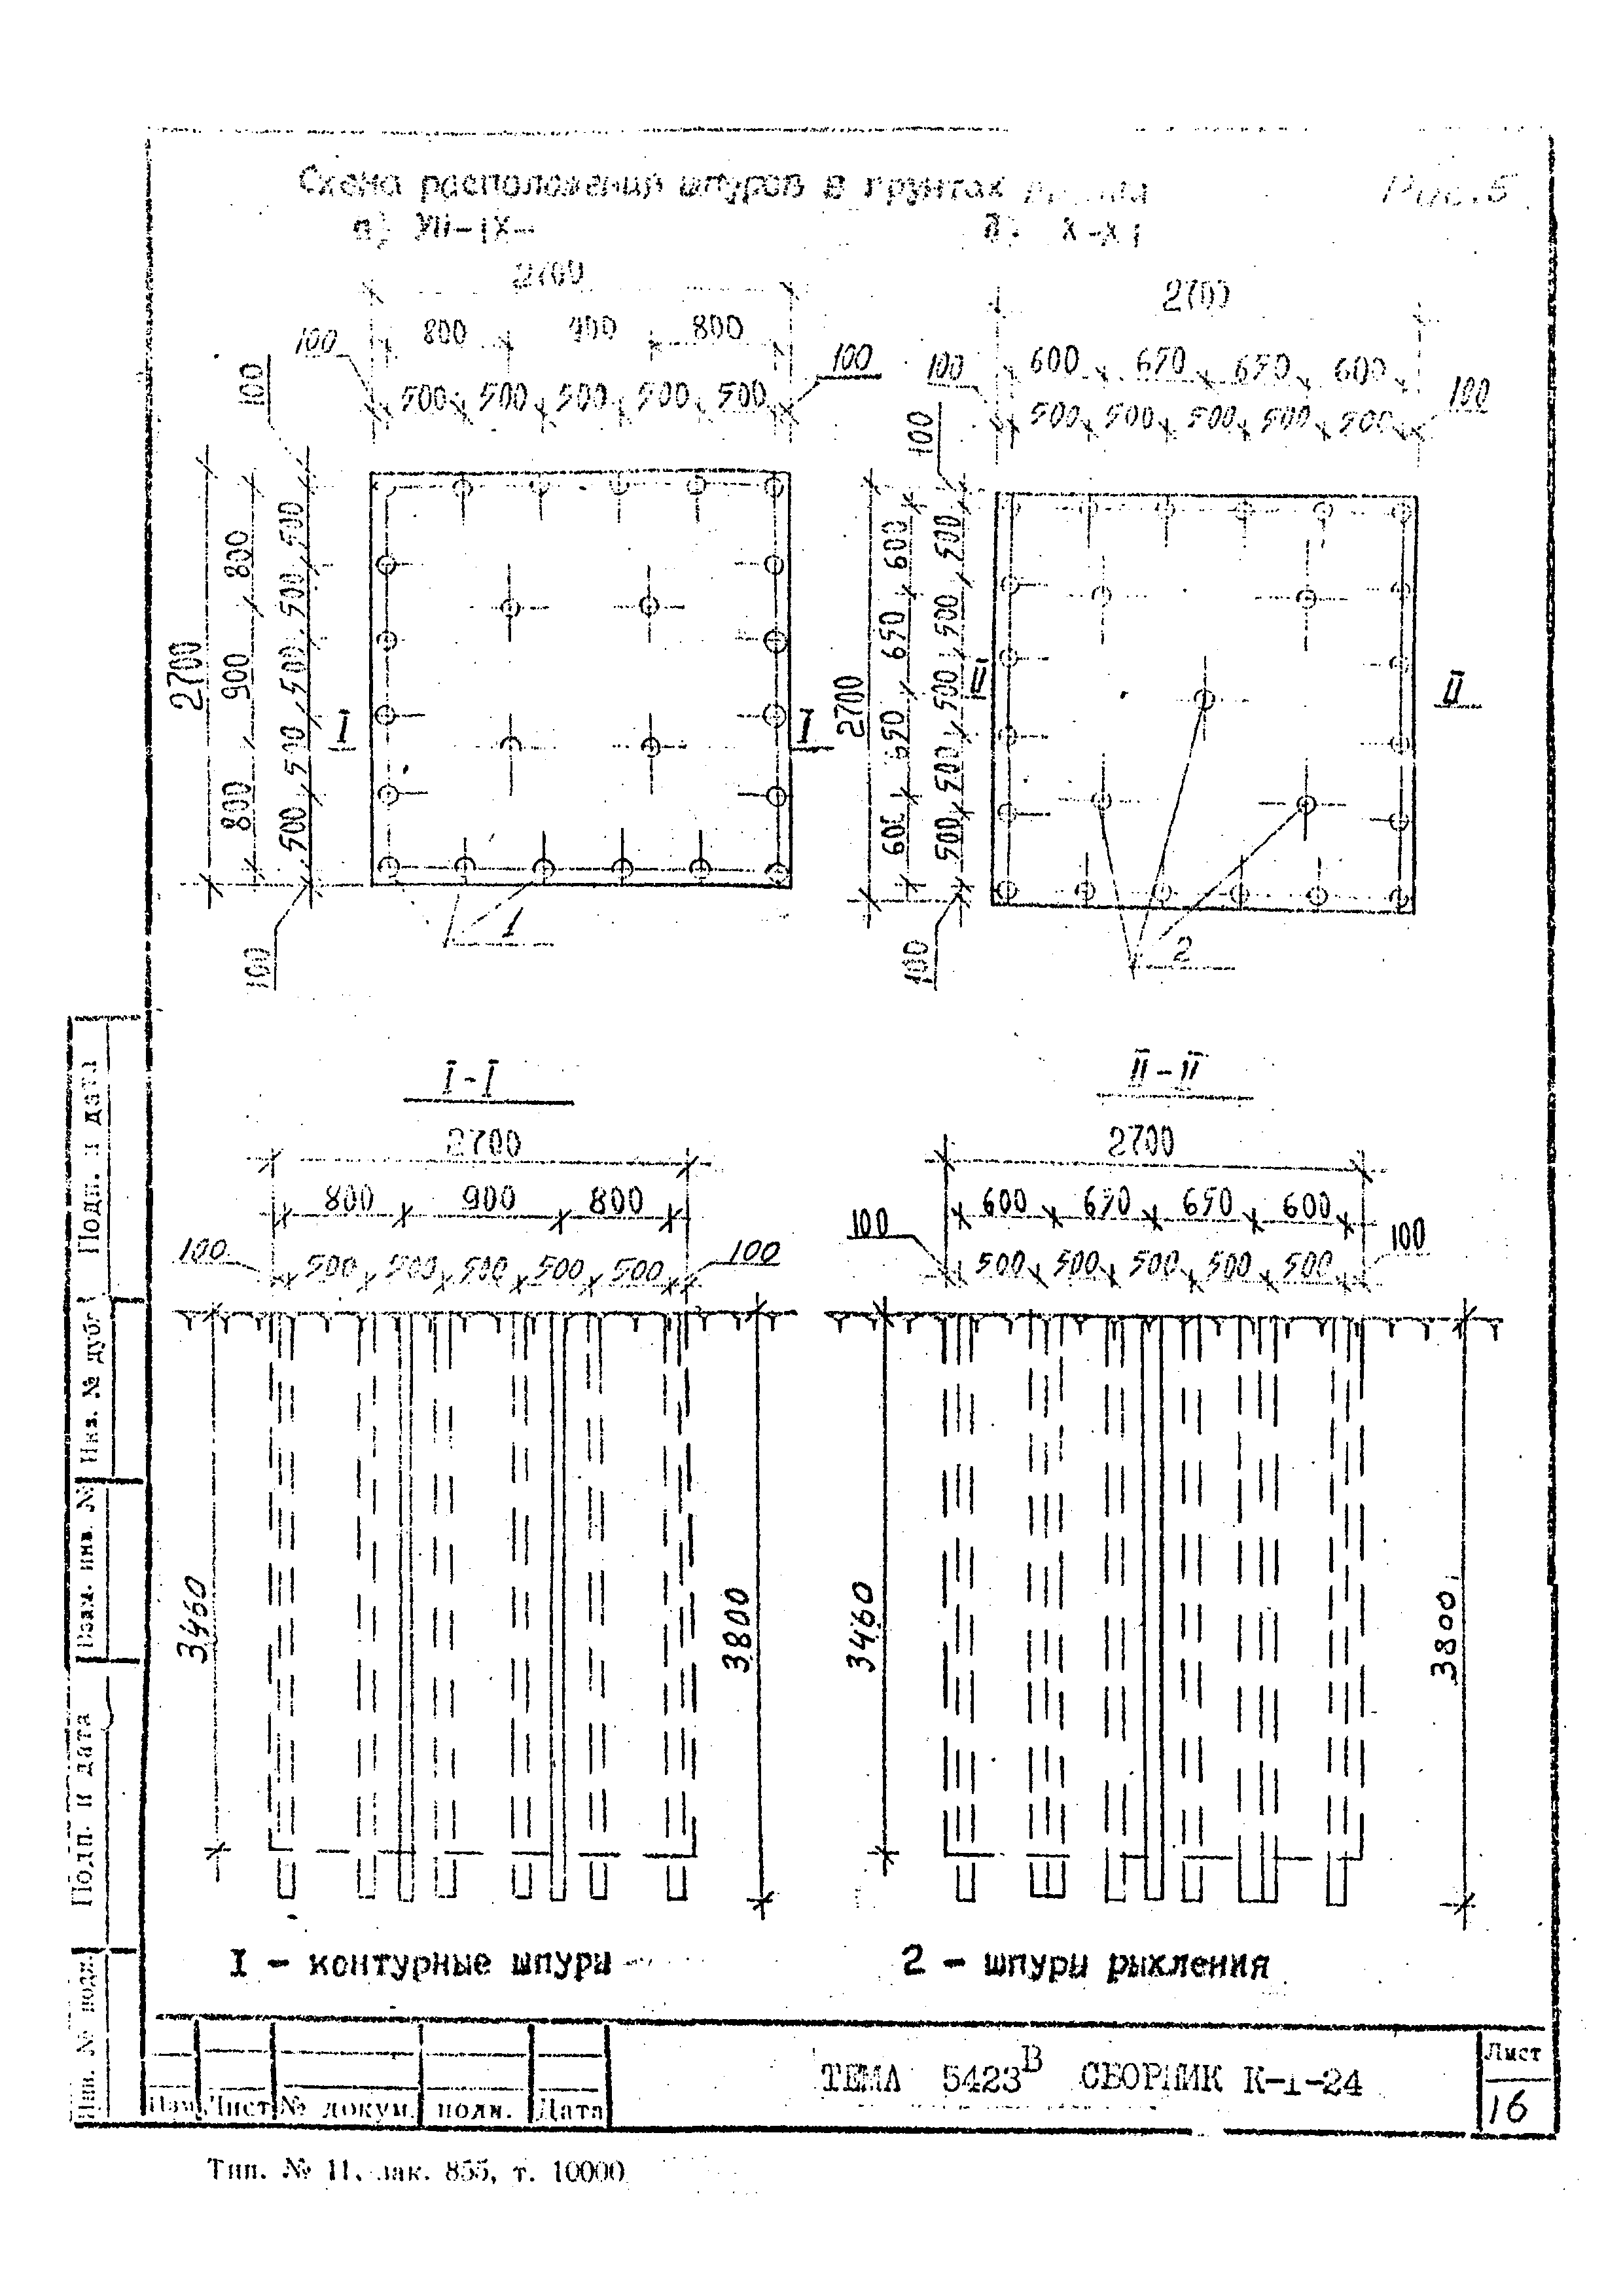 Технологическая карта К-1-24-6